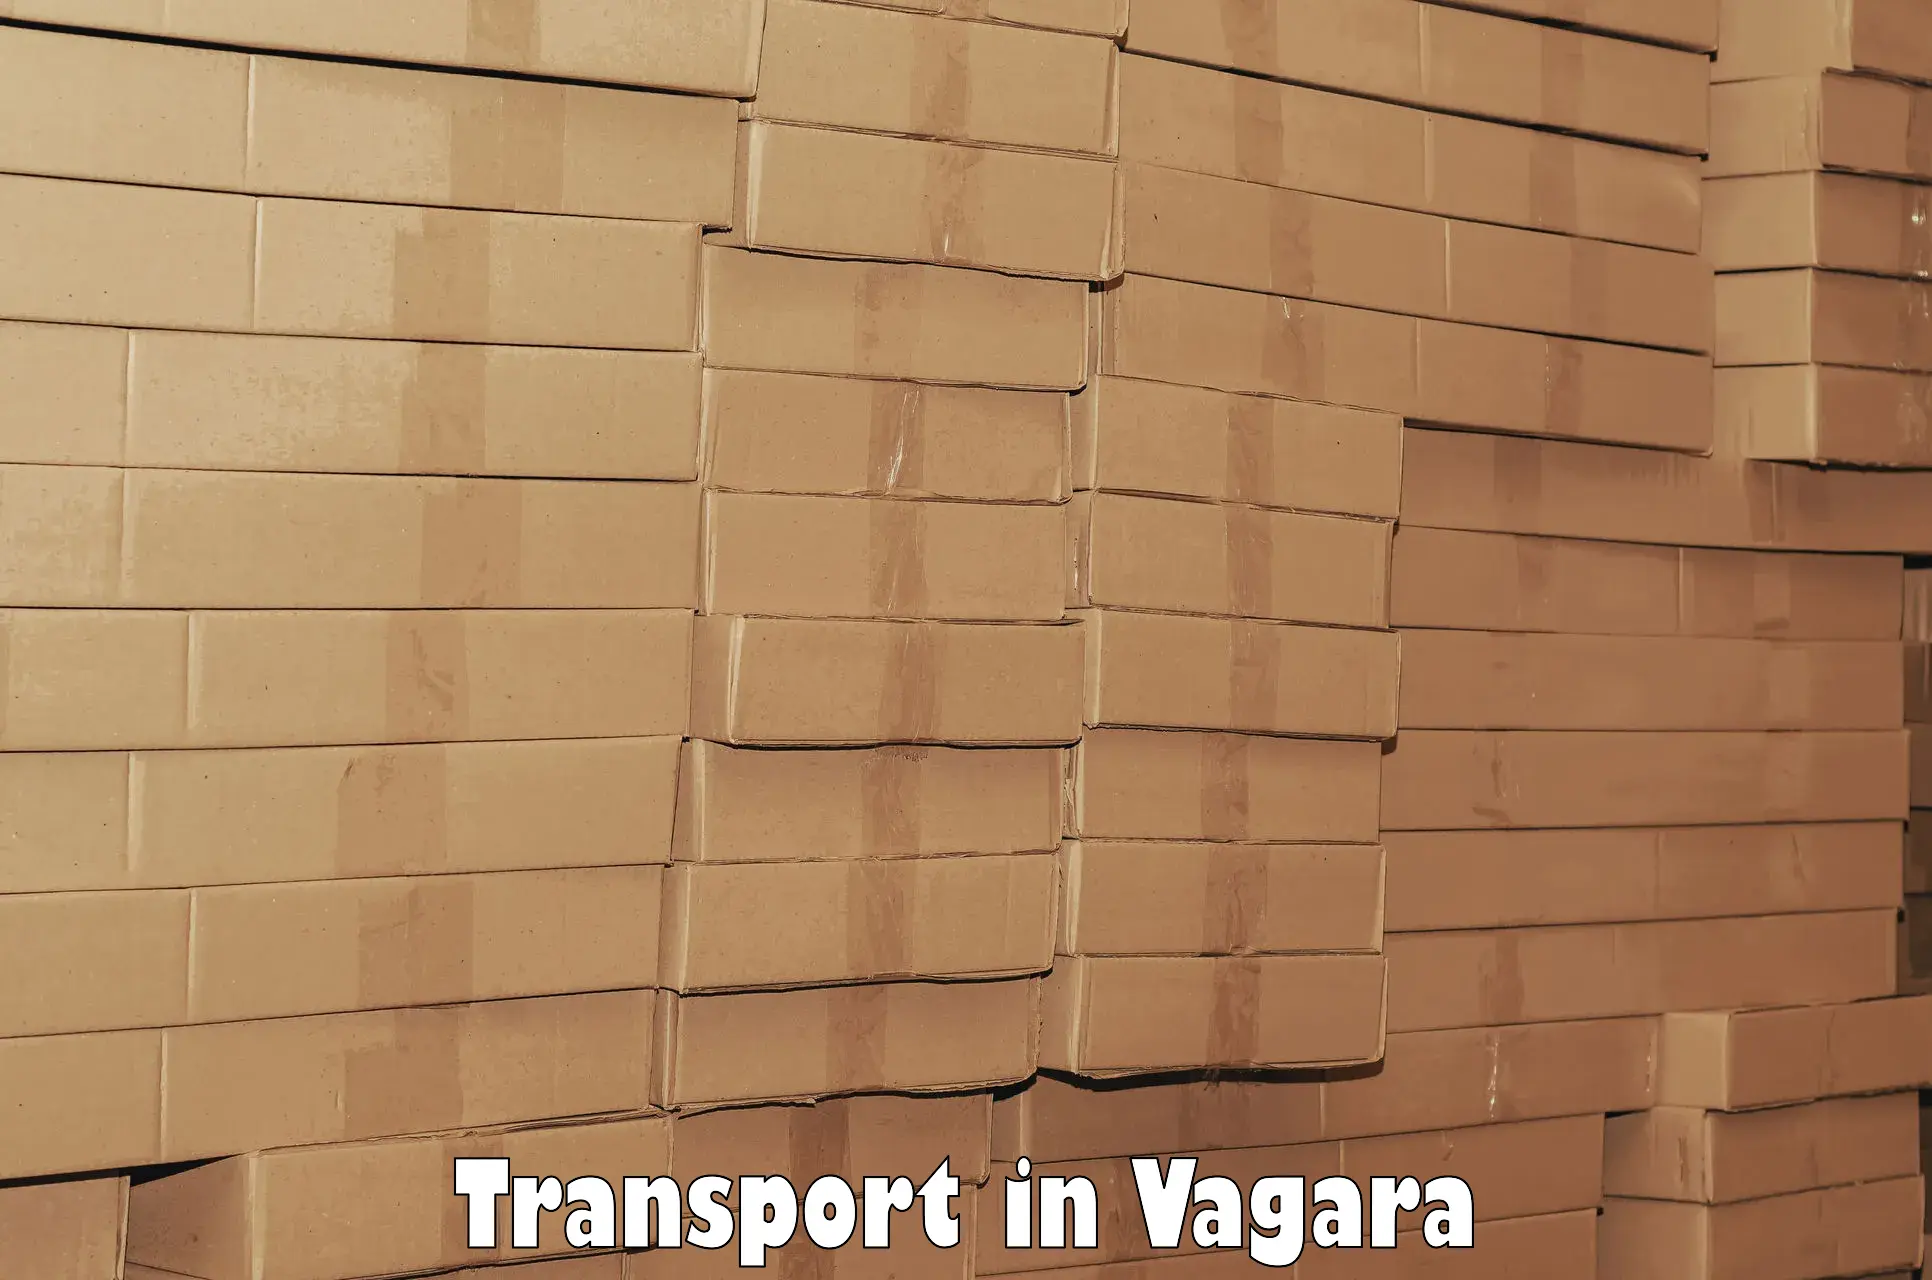 International cargo transportation services in Vagara